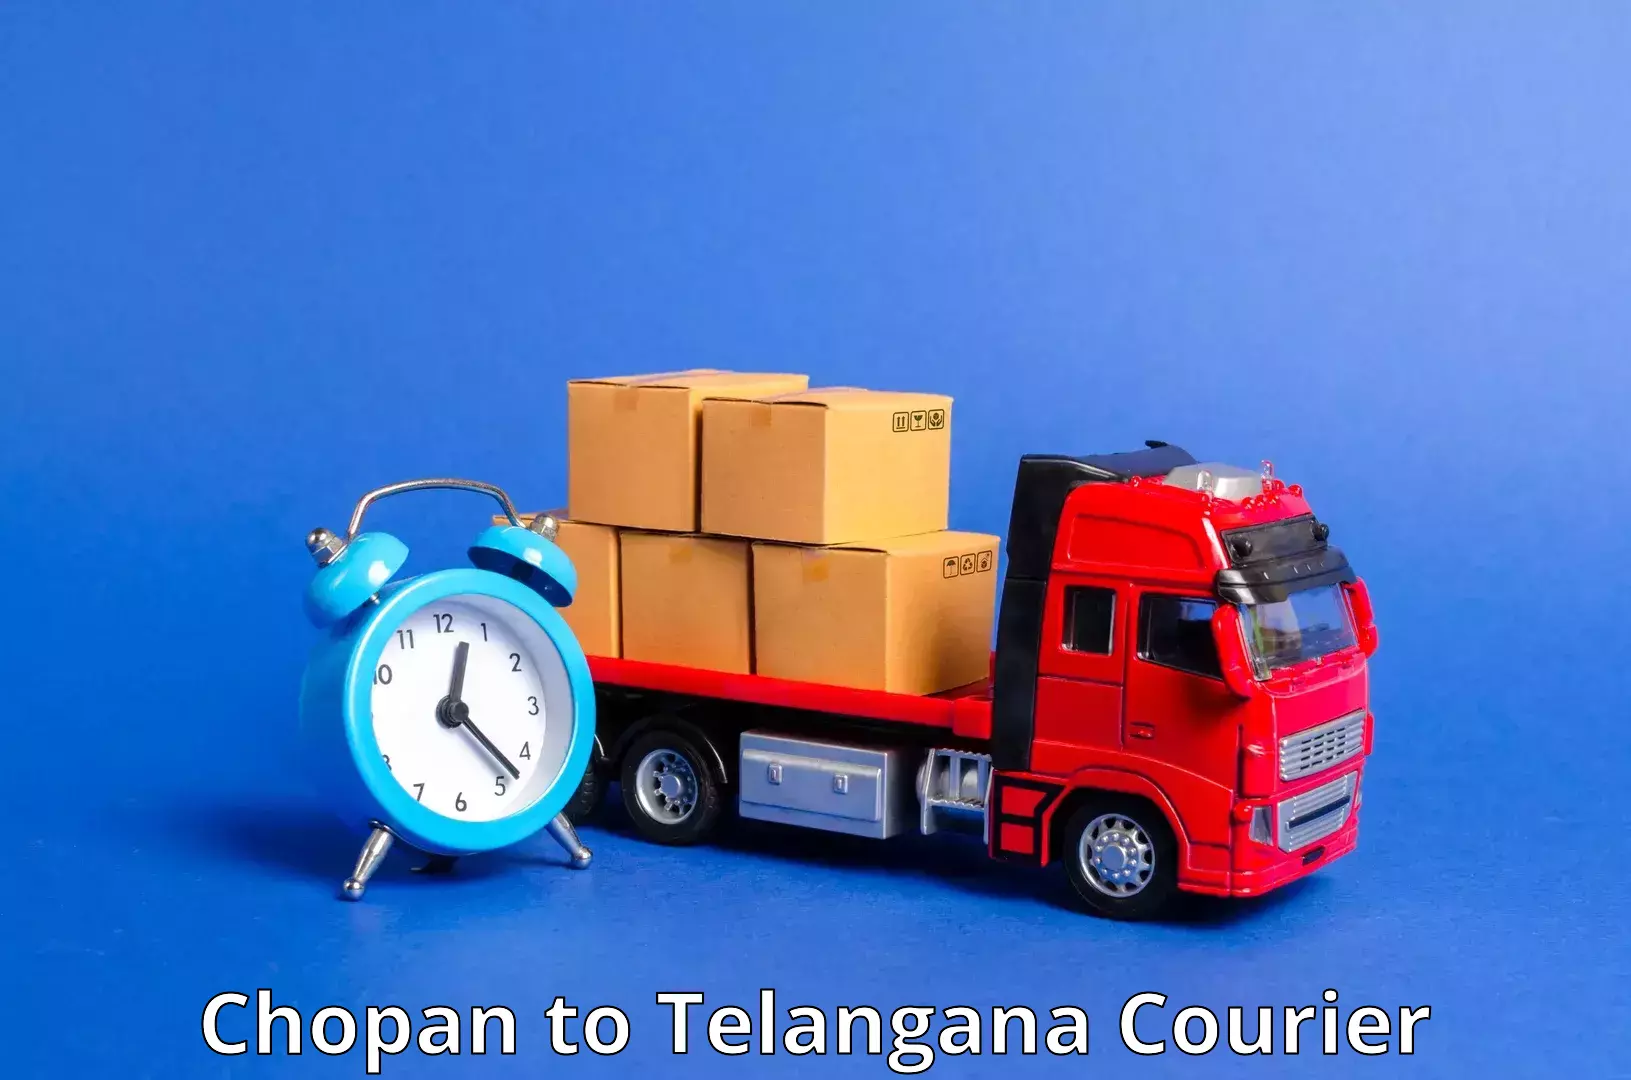 Global logistics network Chopan to Rudrangi